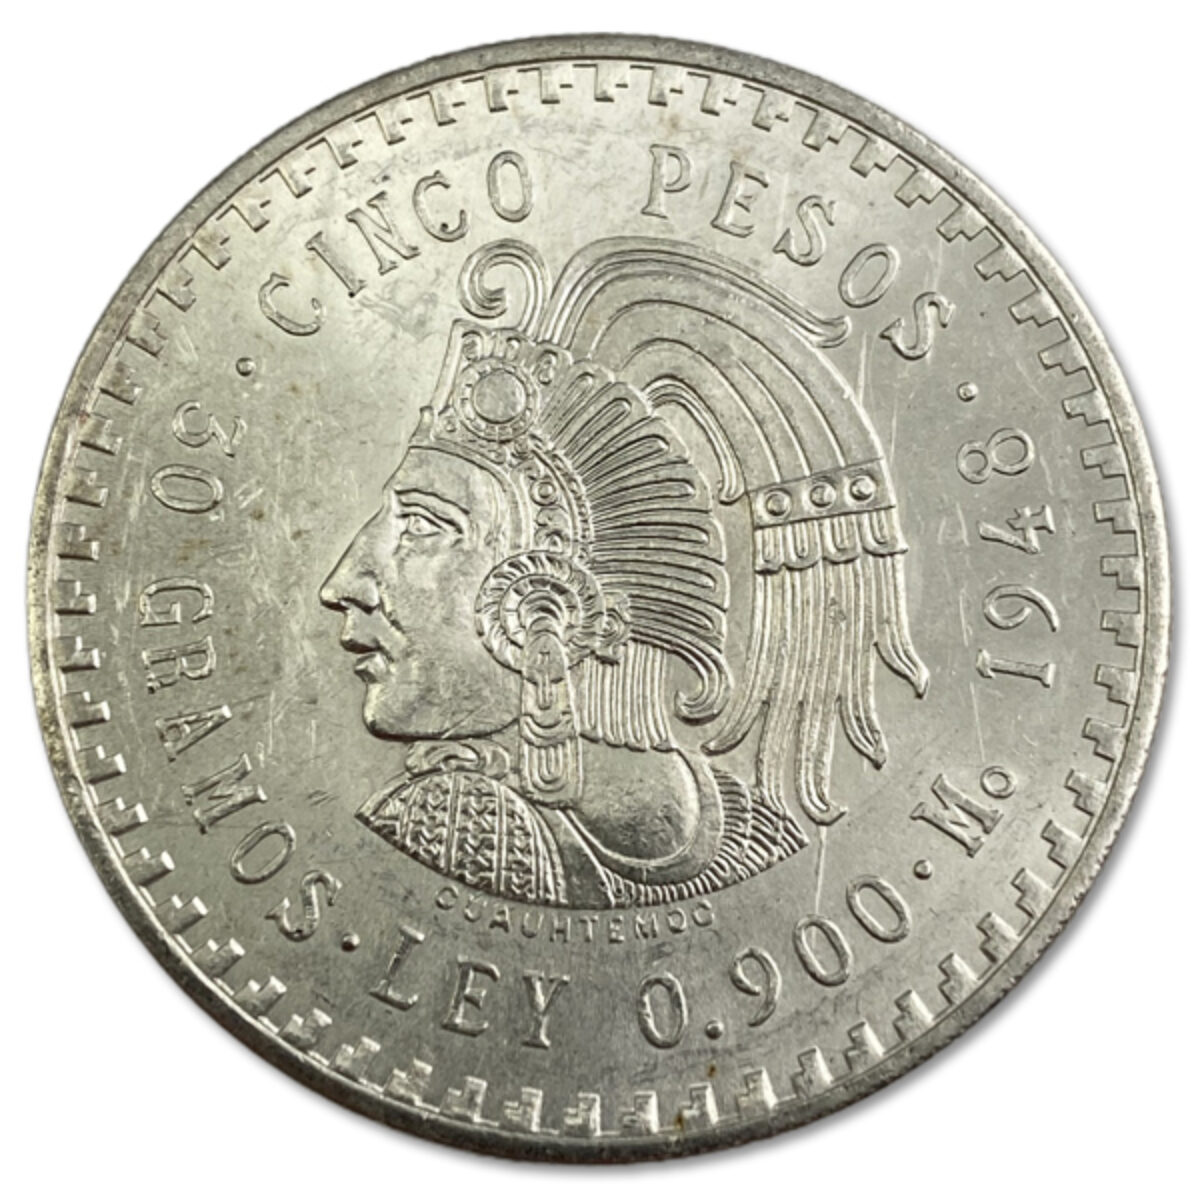 MEXICO UNC SILVER 30 GR COIN 5 PESOS - Coins & Treasures